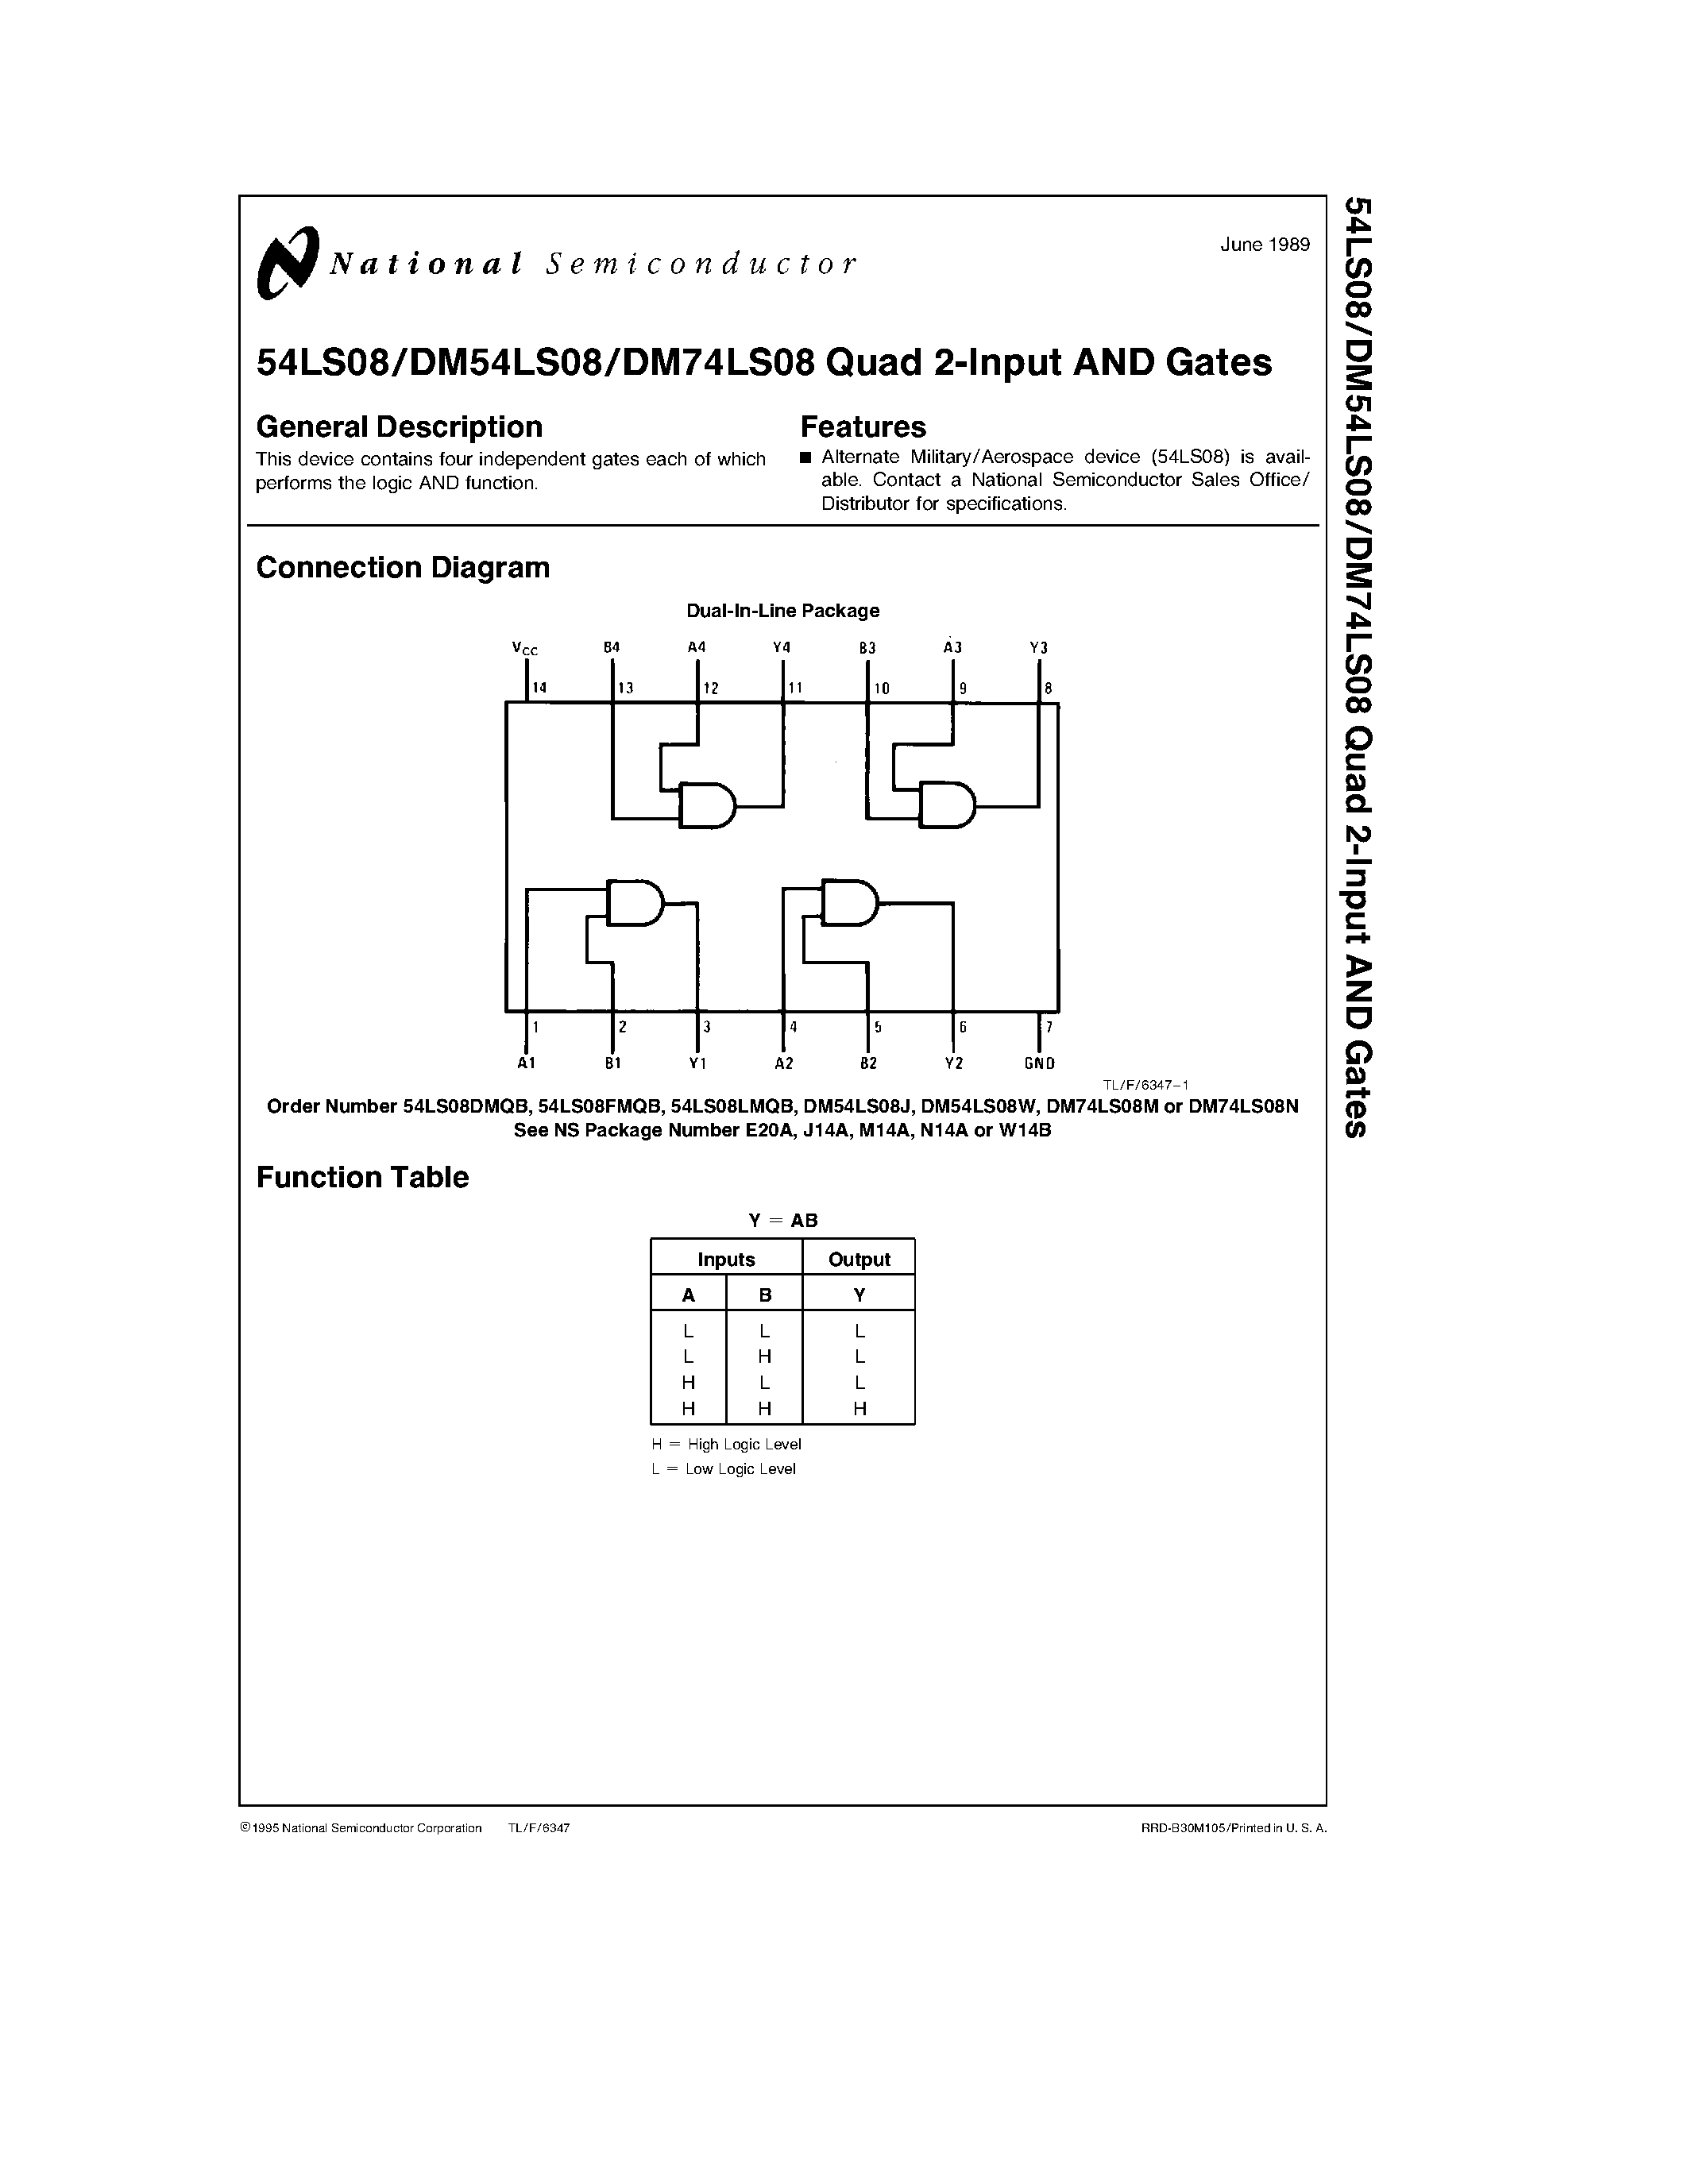 Даташит 54LS08 - Quad 2-Input AND Gates страница 1